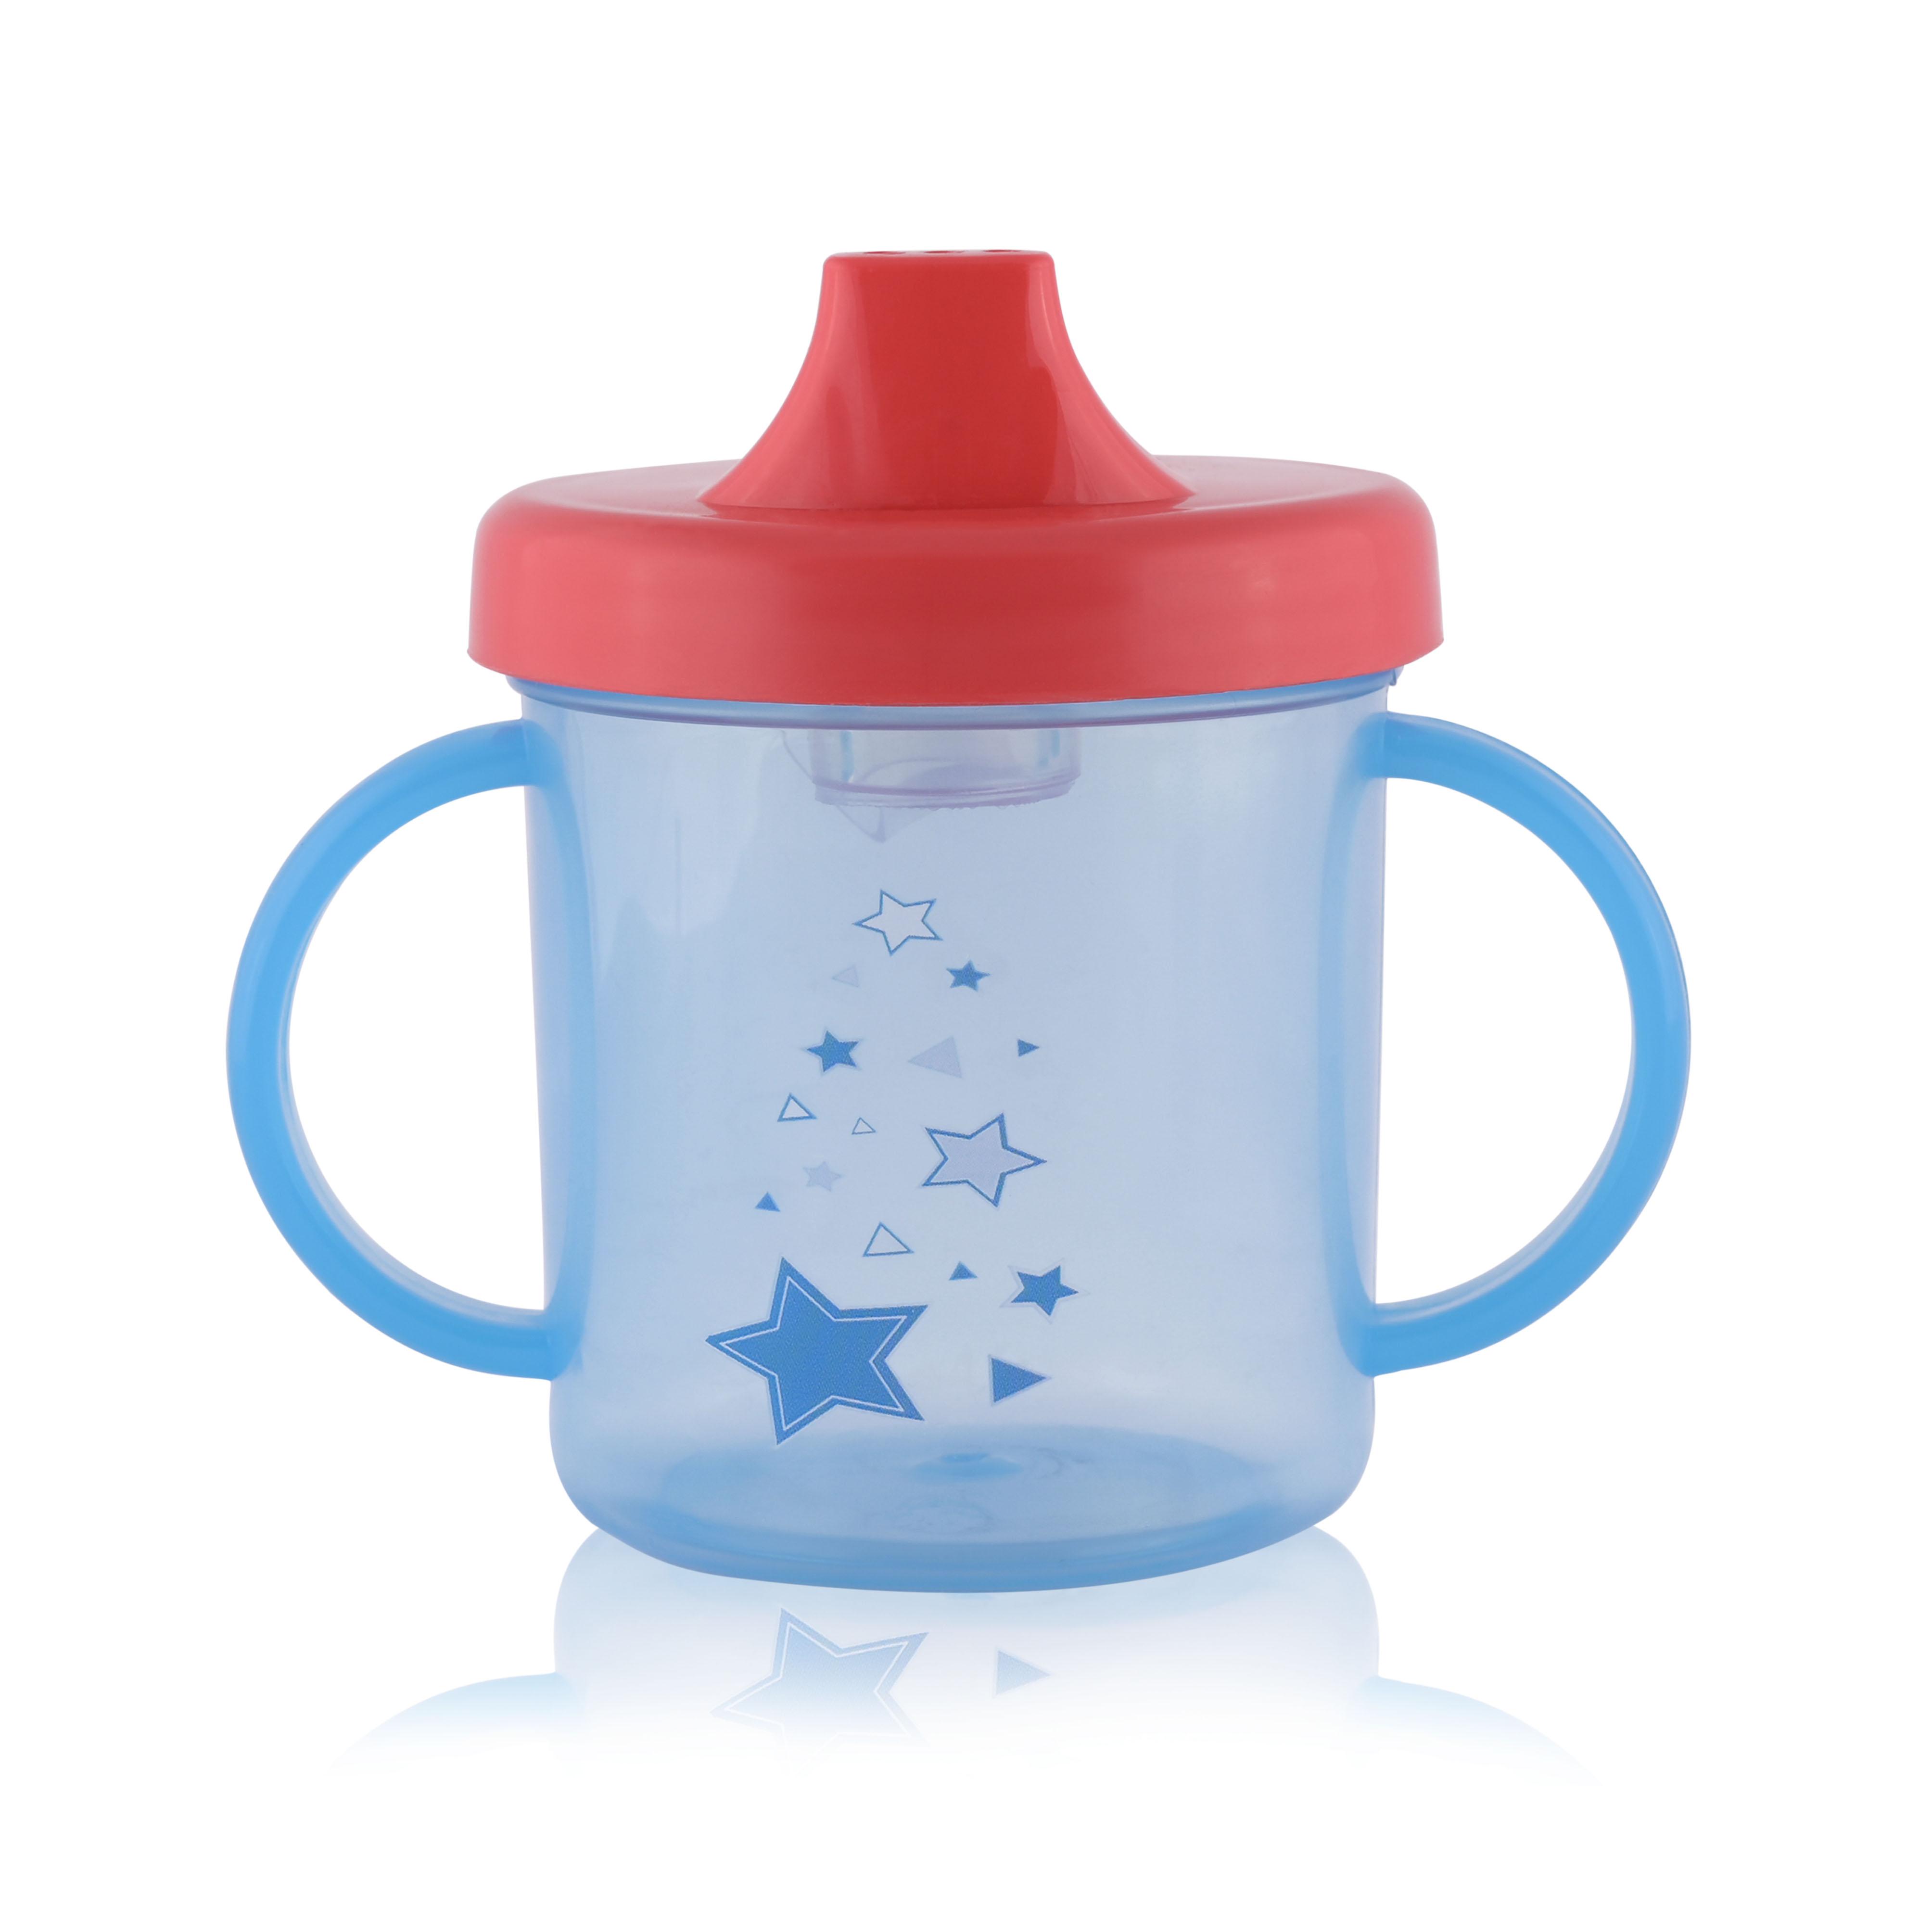 Cana apa bebe - Cana cu manere si cioc, 12 luni+, 210 ml, Blue, bebelorelli.ro